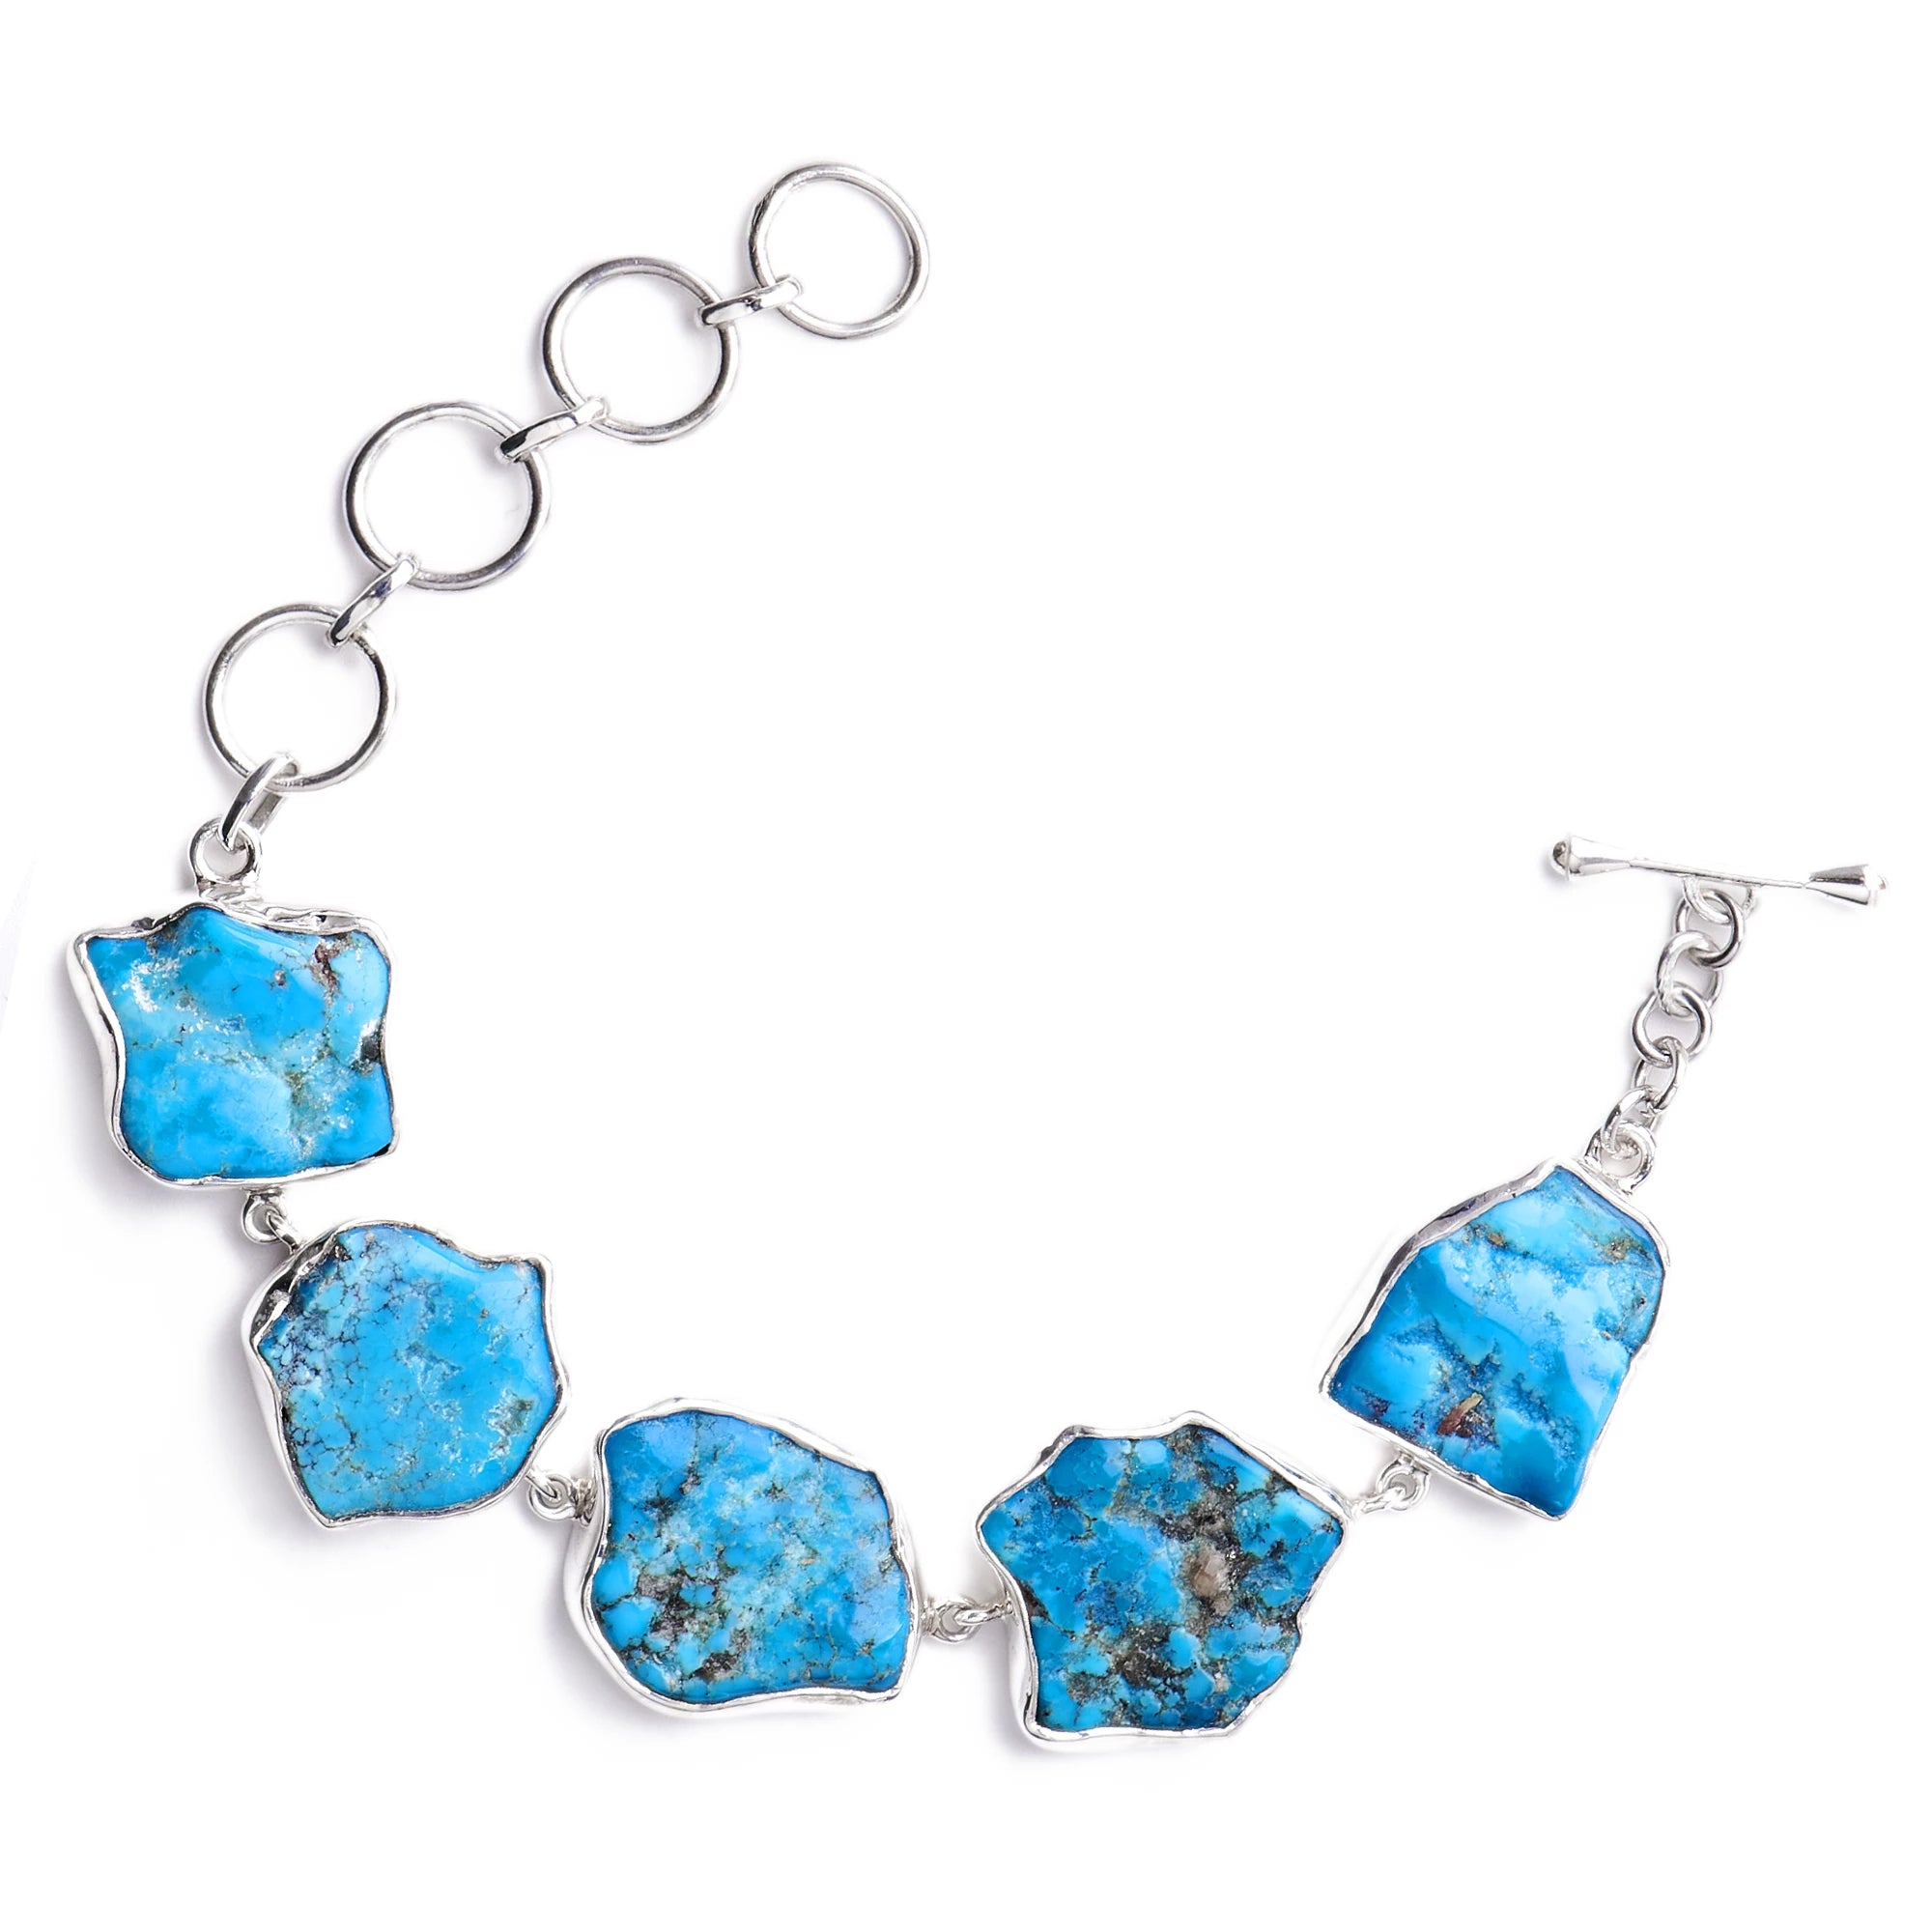 Semi-precious Stones Bracelet Stock Image - Image of craftsmanship, quartz:  163929601